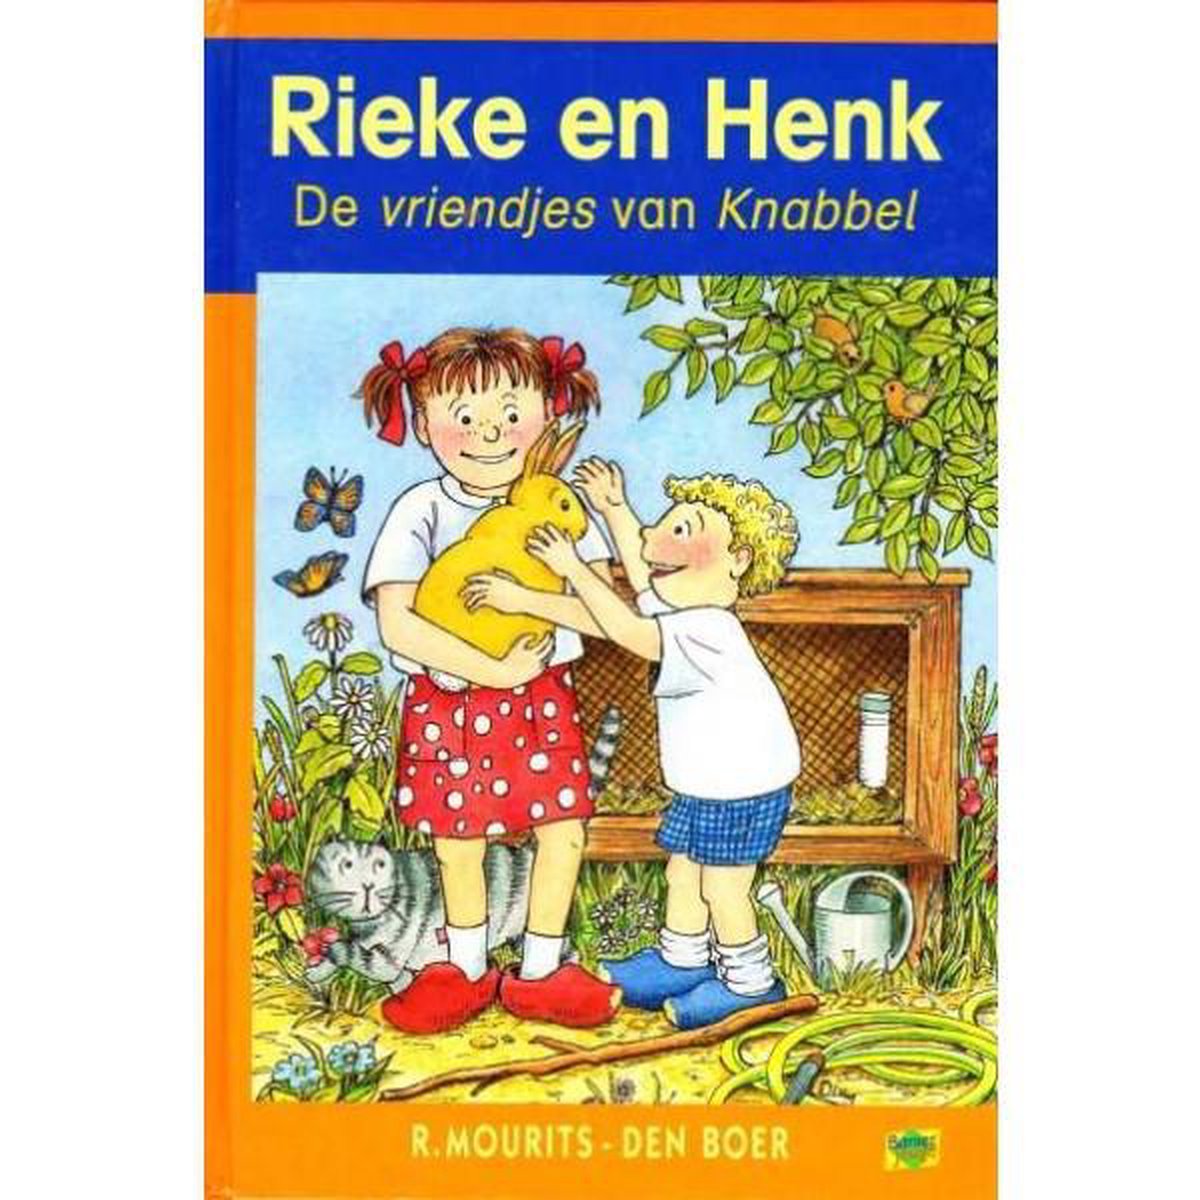 Rieke en Henk - De vriendjes van Knabbel